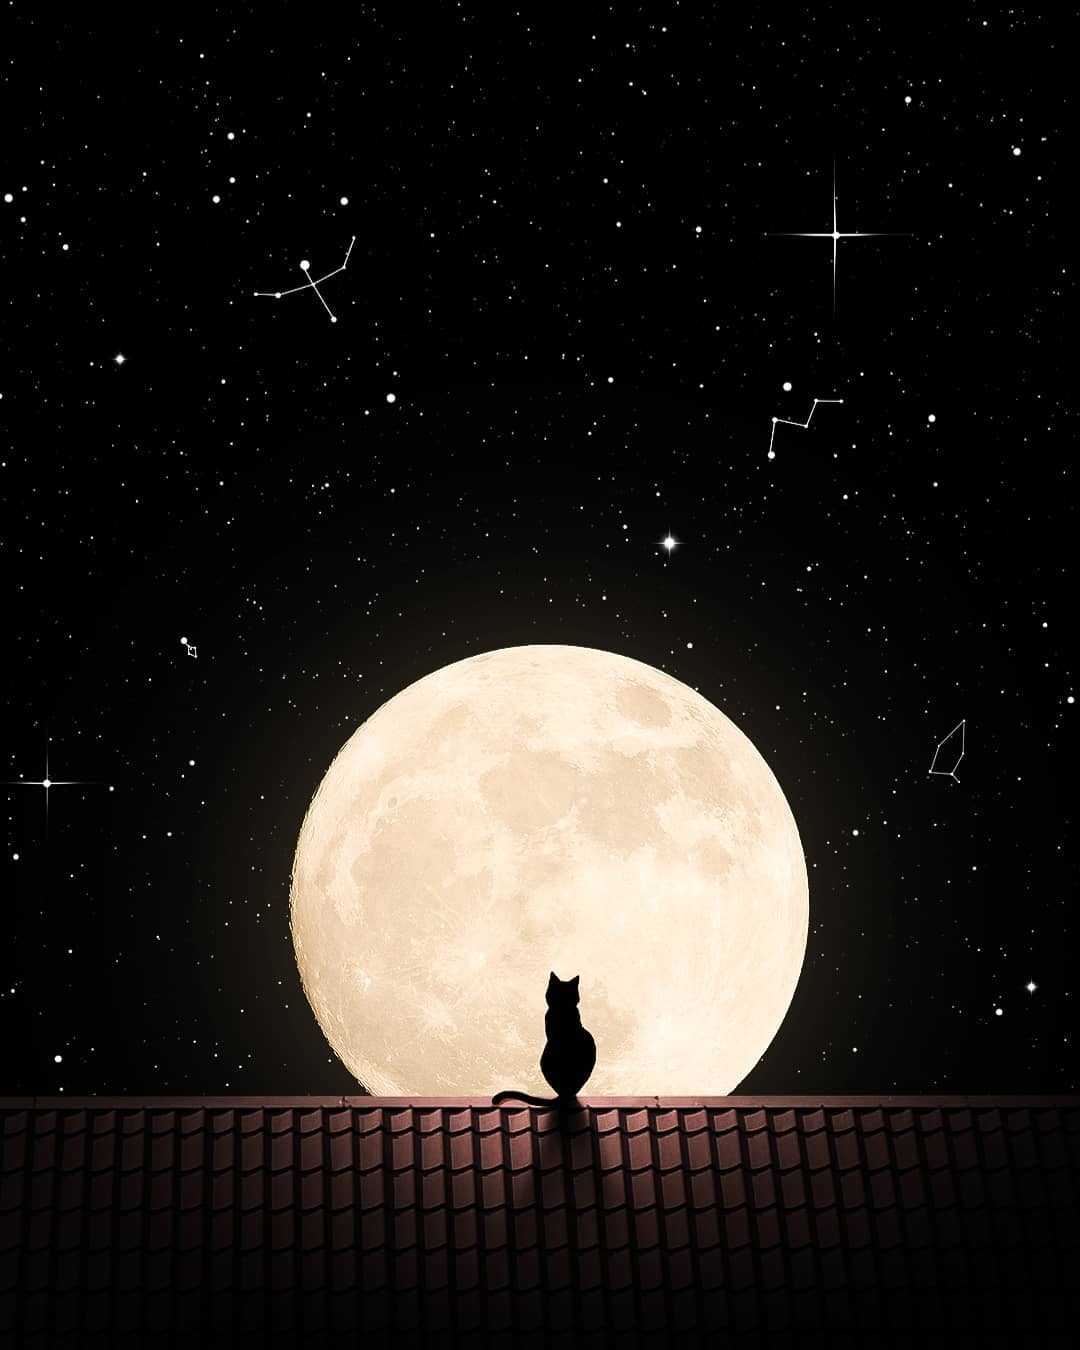 Фото Кошка сидит на крыше дома на фоне полной луны, автор Gᴏᴋᴜʟ Rᴀᴊ - gokurazs